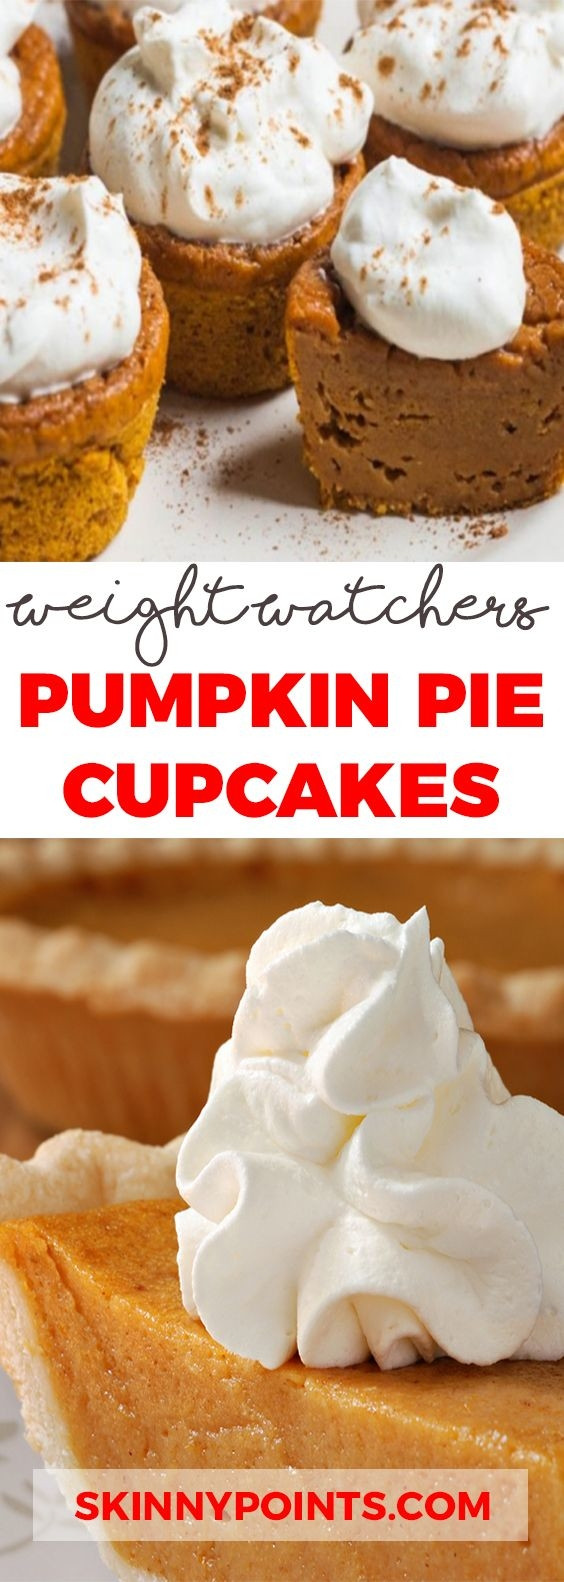 Weight Watchers Pumpkin Pie
 Pumpkin Pie Cupcakes – ly 3 Weight Watchers SmartPoints